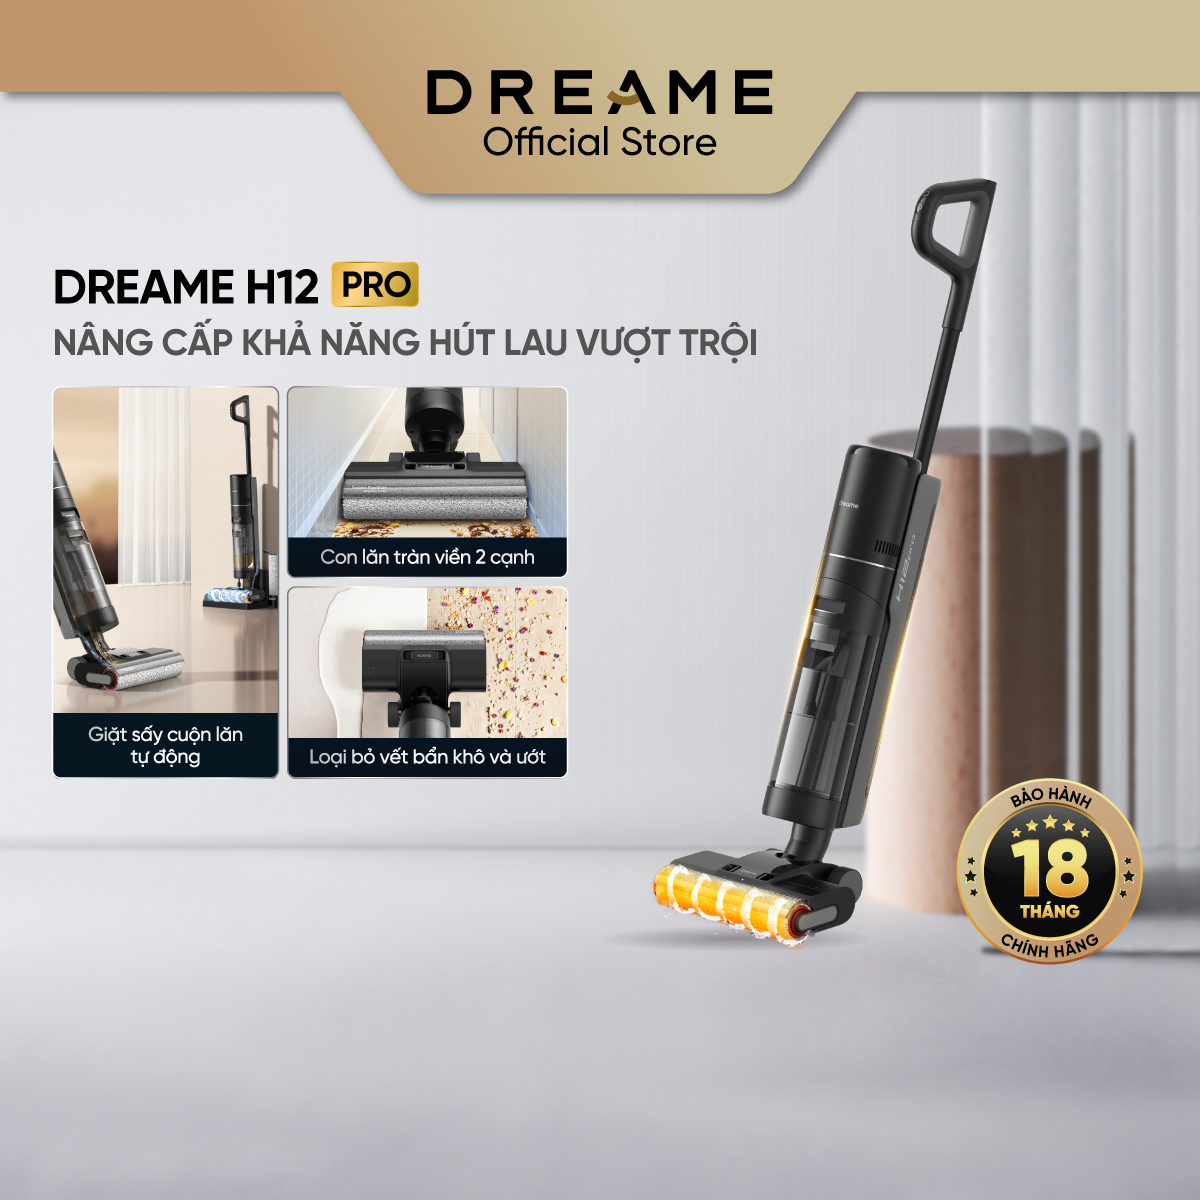 Máy Lau Sàn Hút Bụi Tự Động Giặt Sấy Dreame H12 pro/ H12/ H12 Dual- Bản quốc tế - Bảo hành 18 tháng